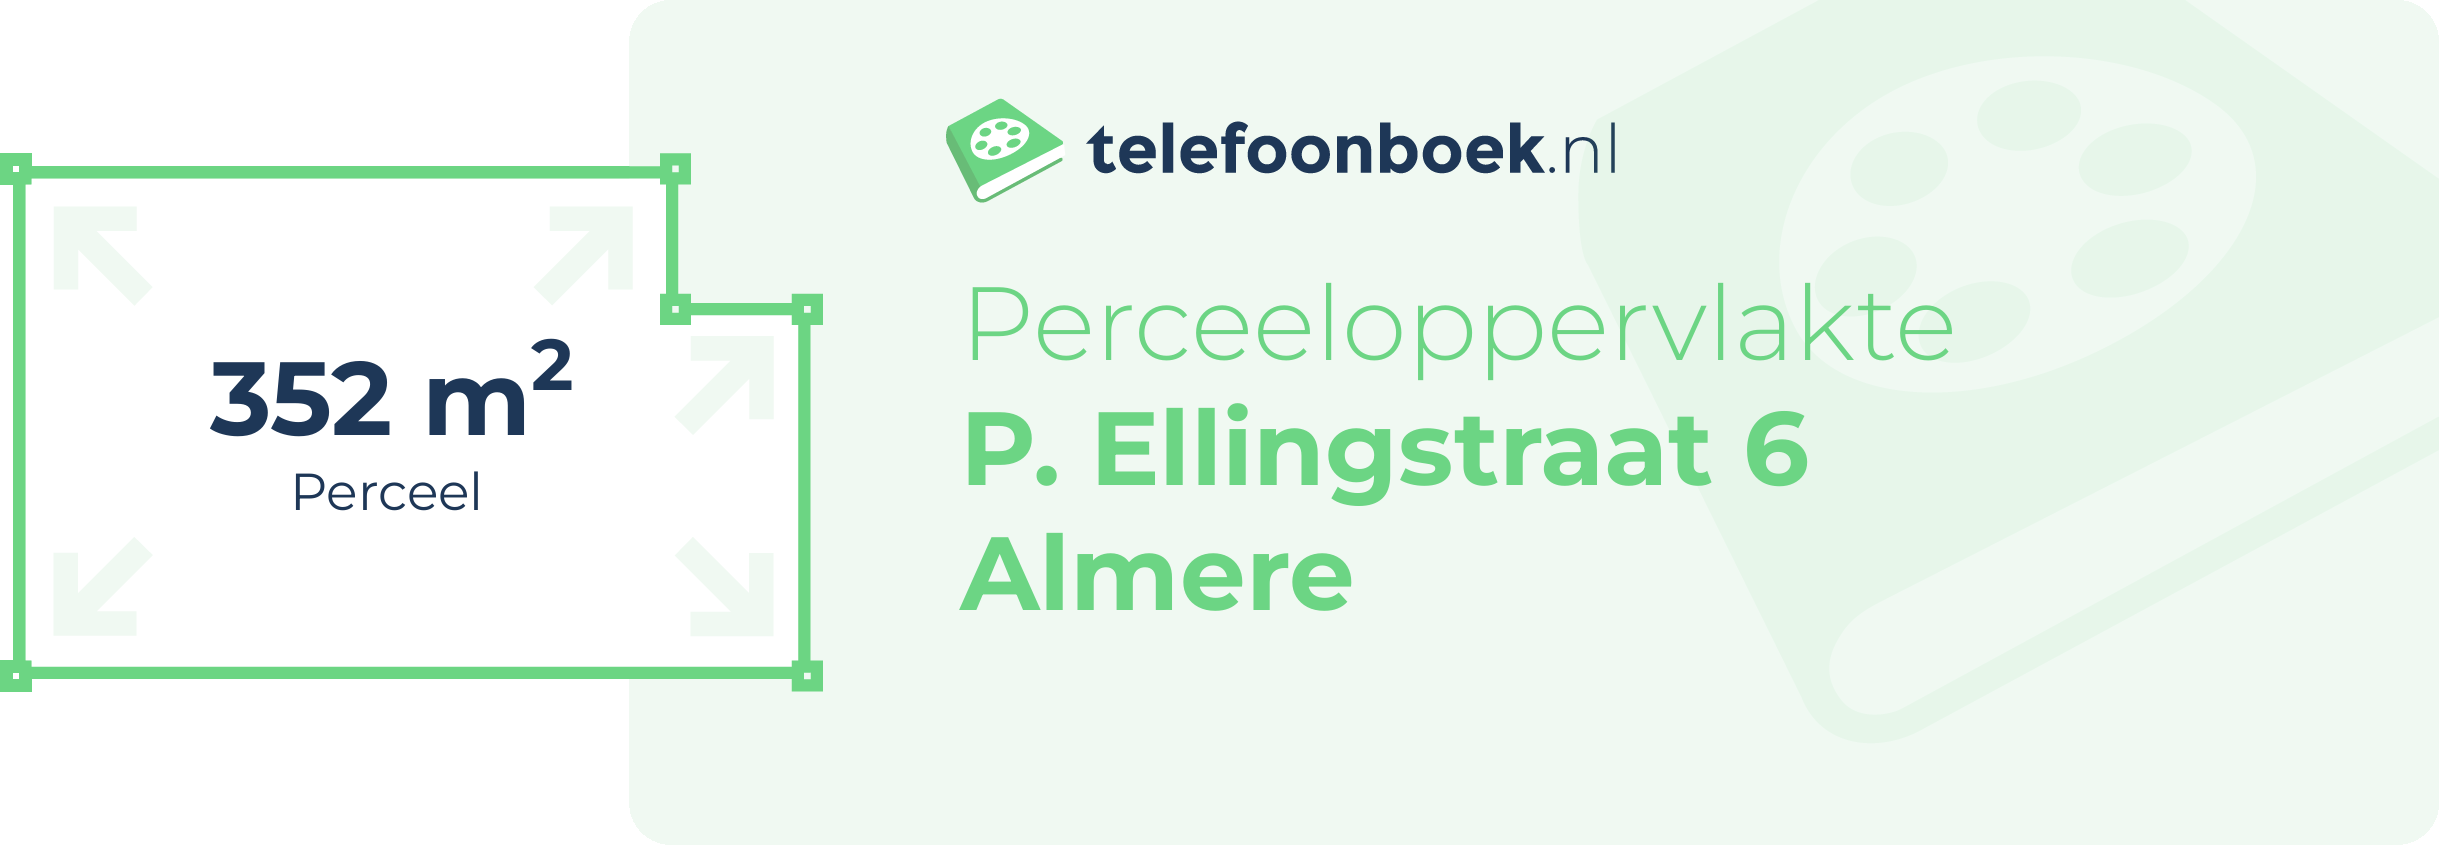 Perceeloppervlakte P. Ellingstraat 6 Almere